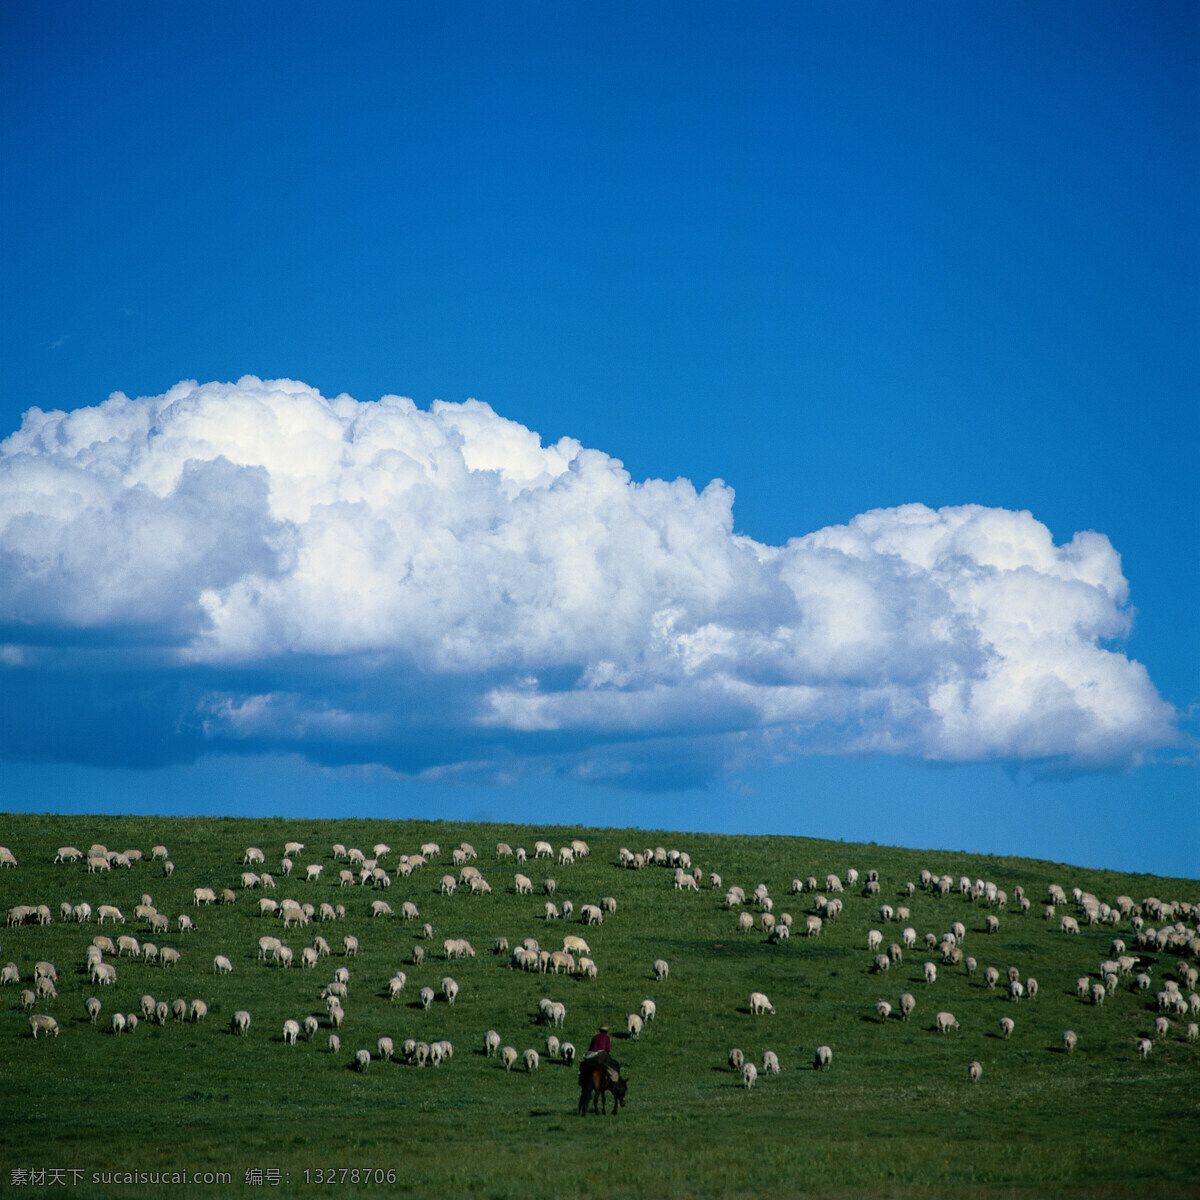 放牧 天空 蓝天 云彩 白云 草原 牛羊 自然景观 自然风景 草地 蒙古 大草原 摄影图片 旅游摄影 国内旅游